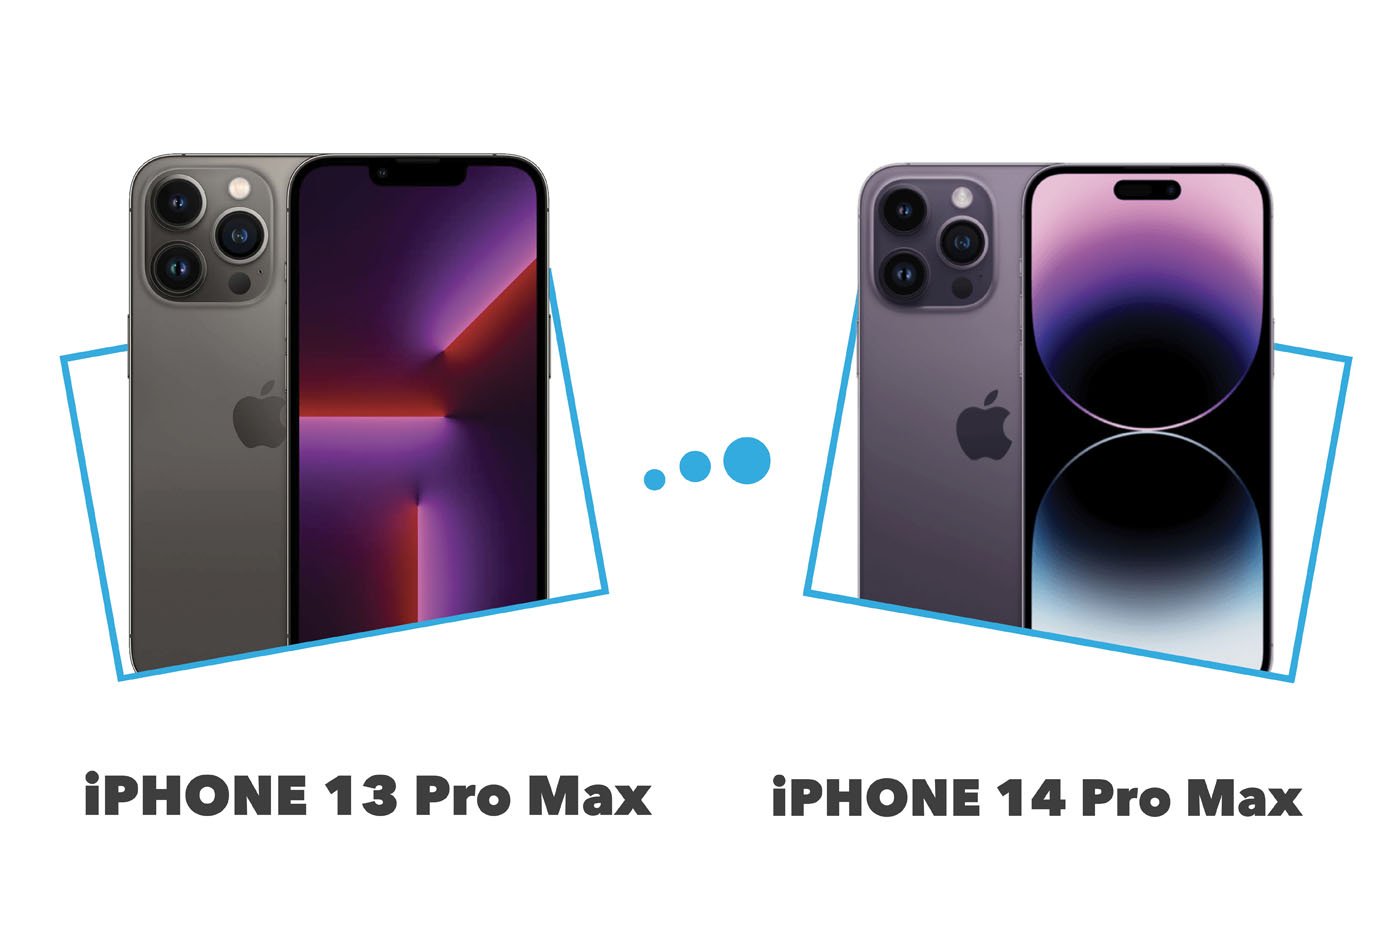 Comparatif iPhone 13 Pro Max VS iPhone 14 Pro Max